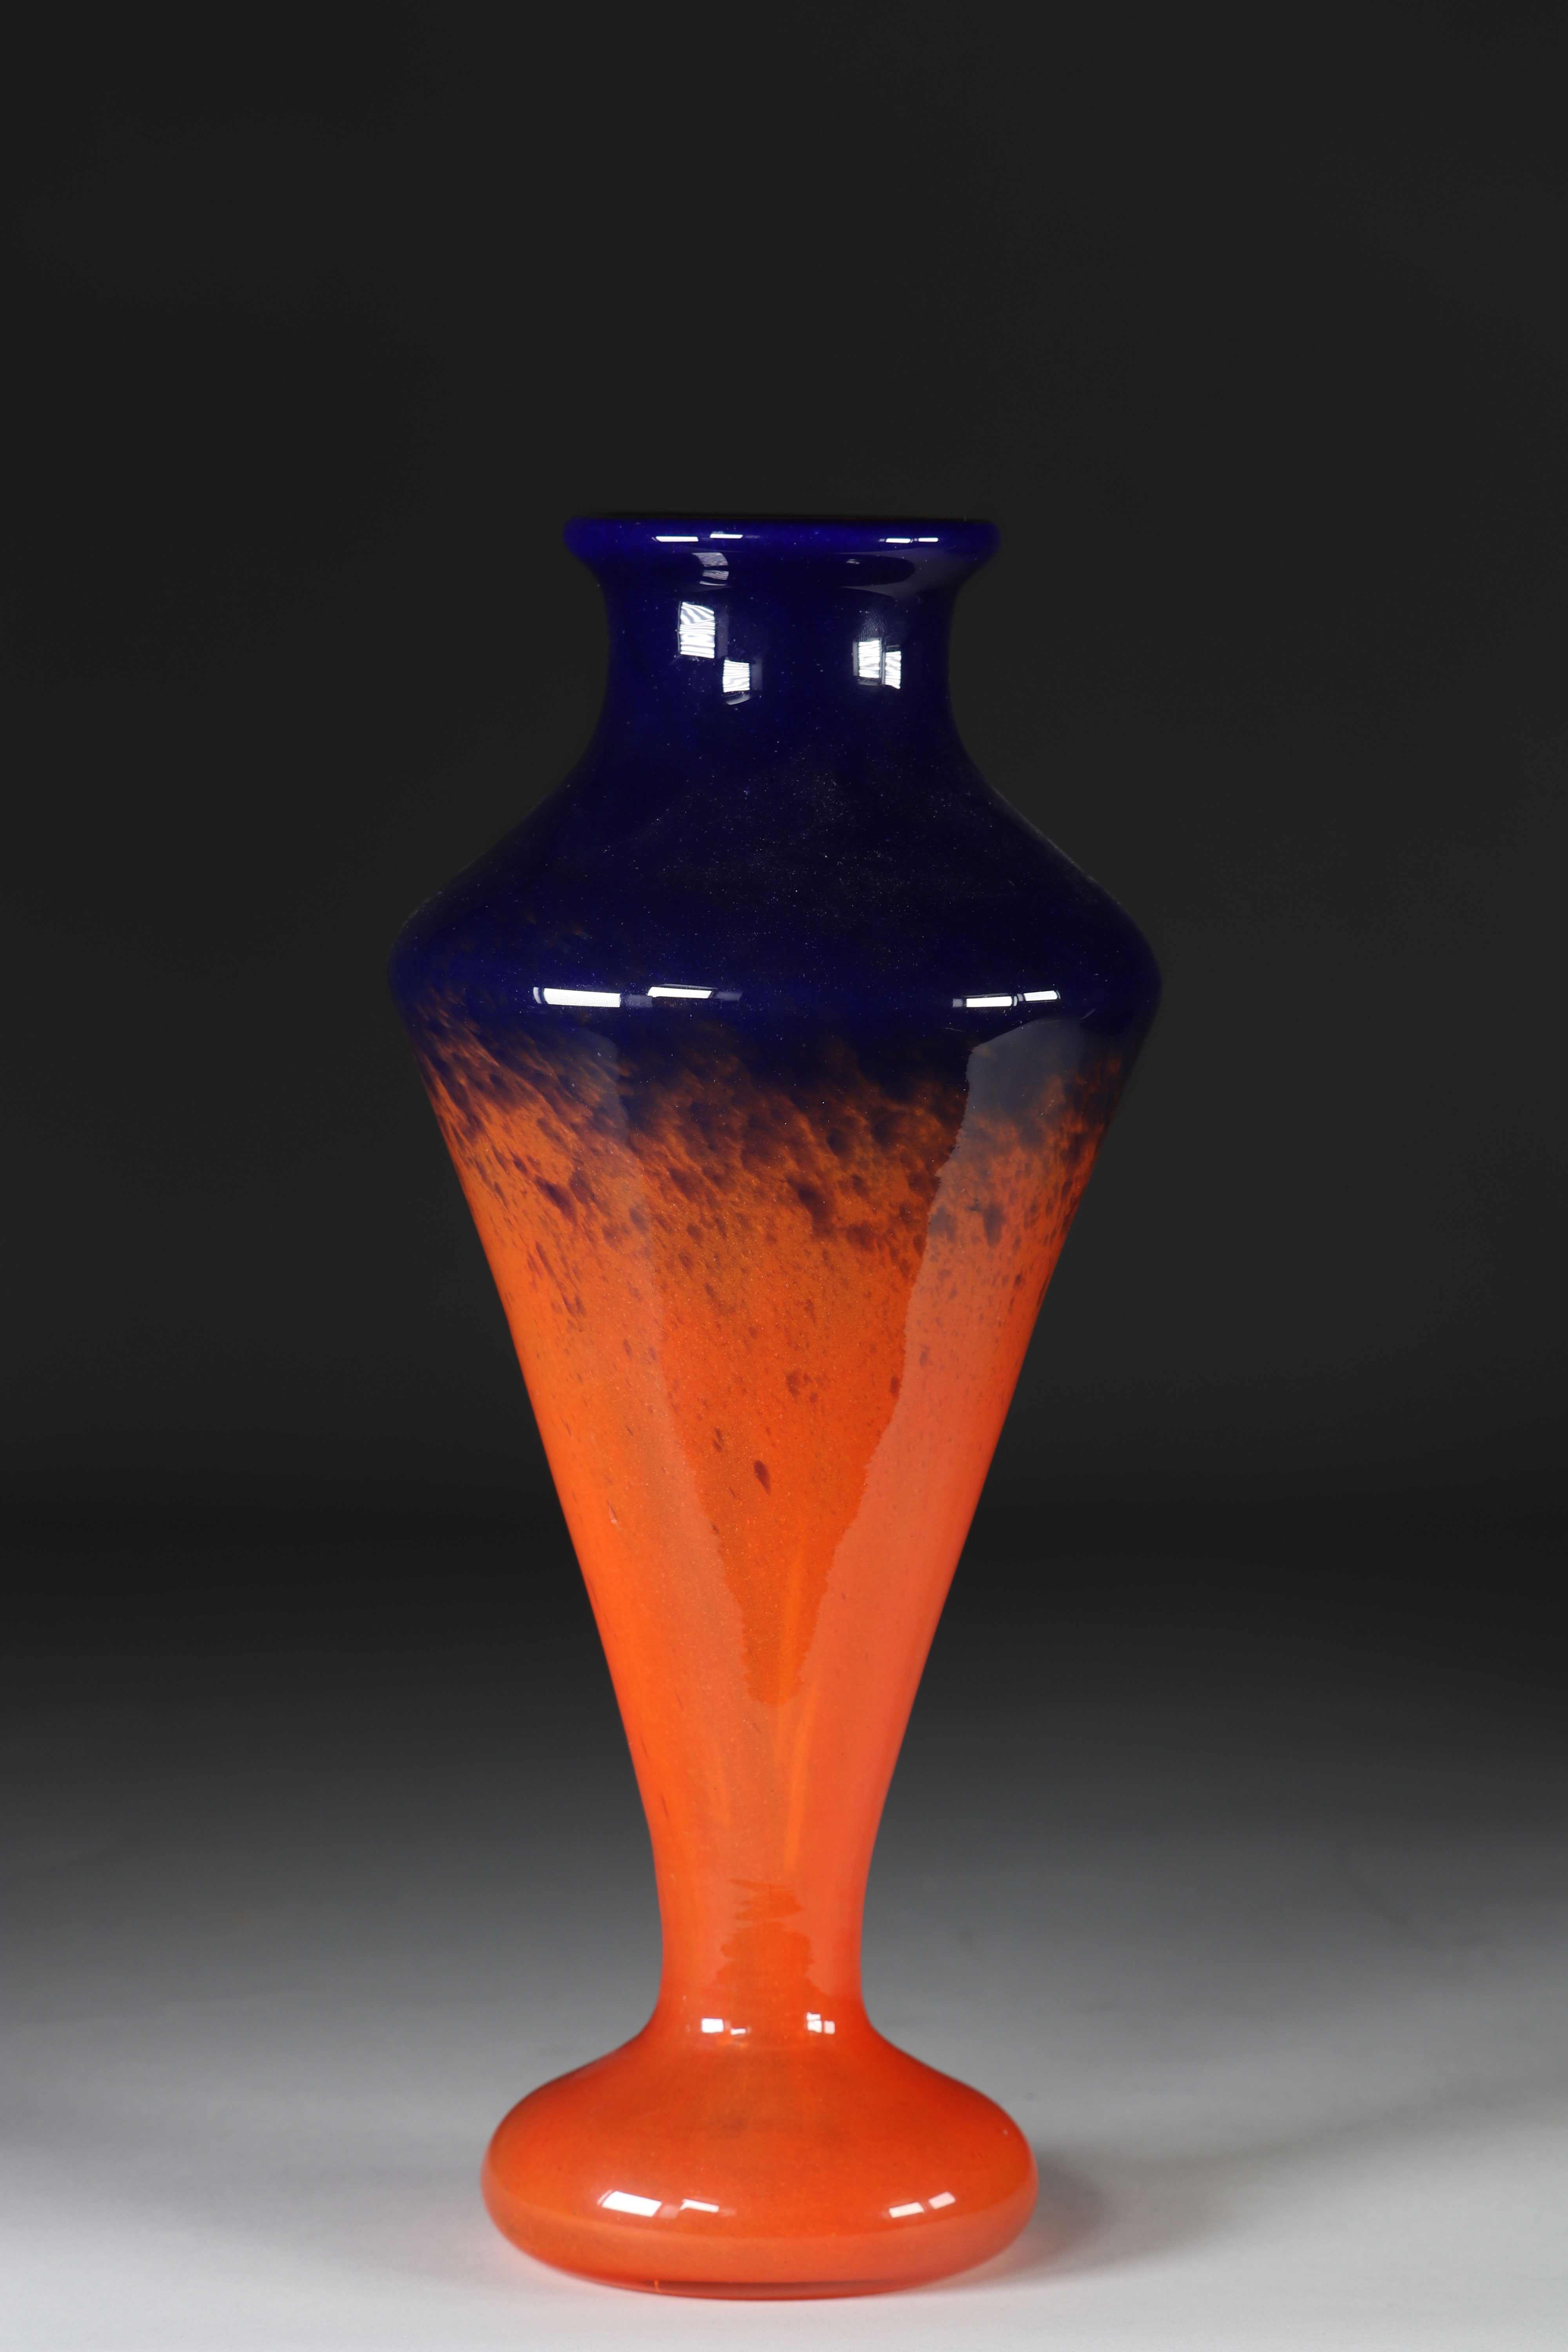 Schneider glass vase with shower foot in orange and blue shades